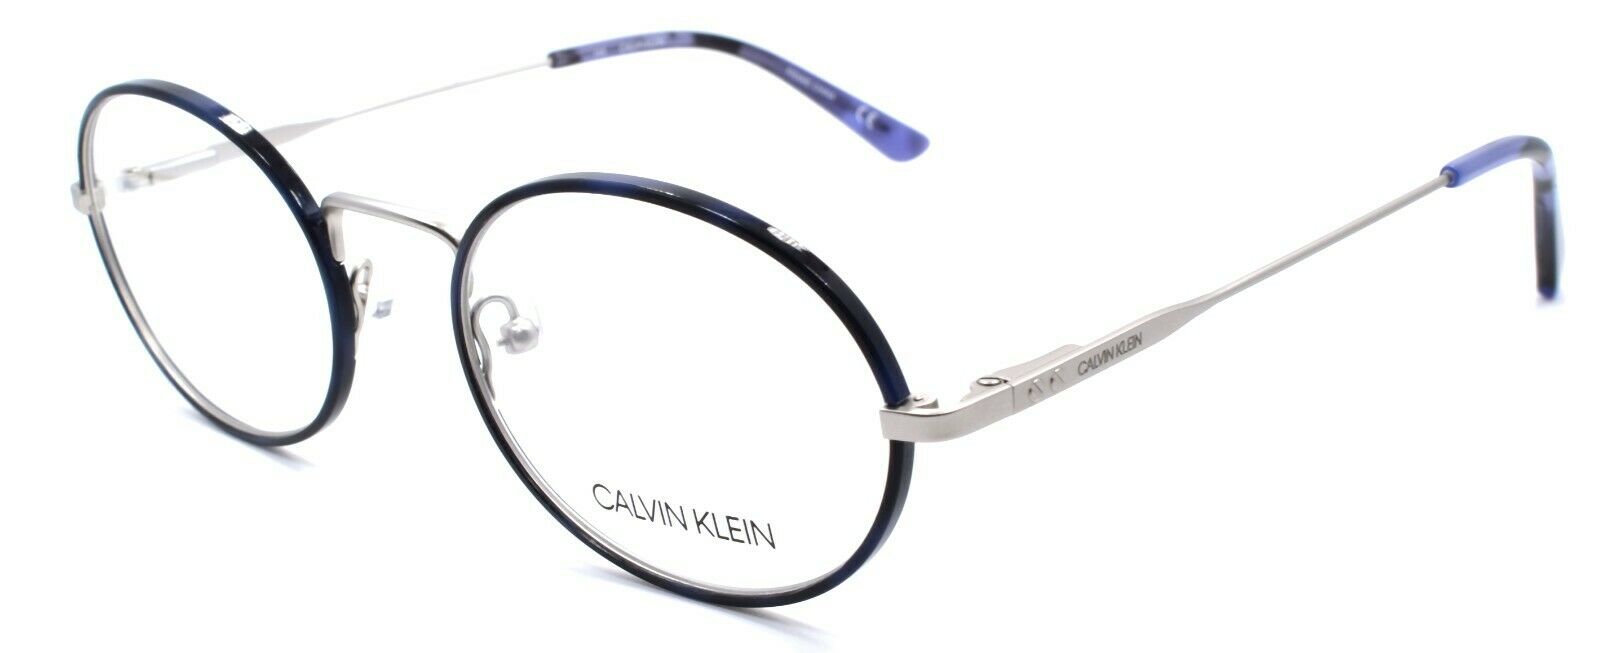 1-Calvin Klein C20115 456 Men's Eyeglasses Frames 51-21-145 Navy Tortoise-883901124835-IKSpecs